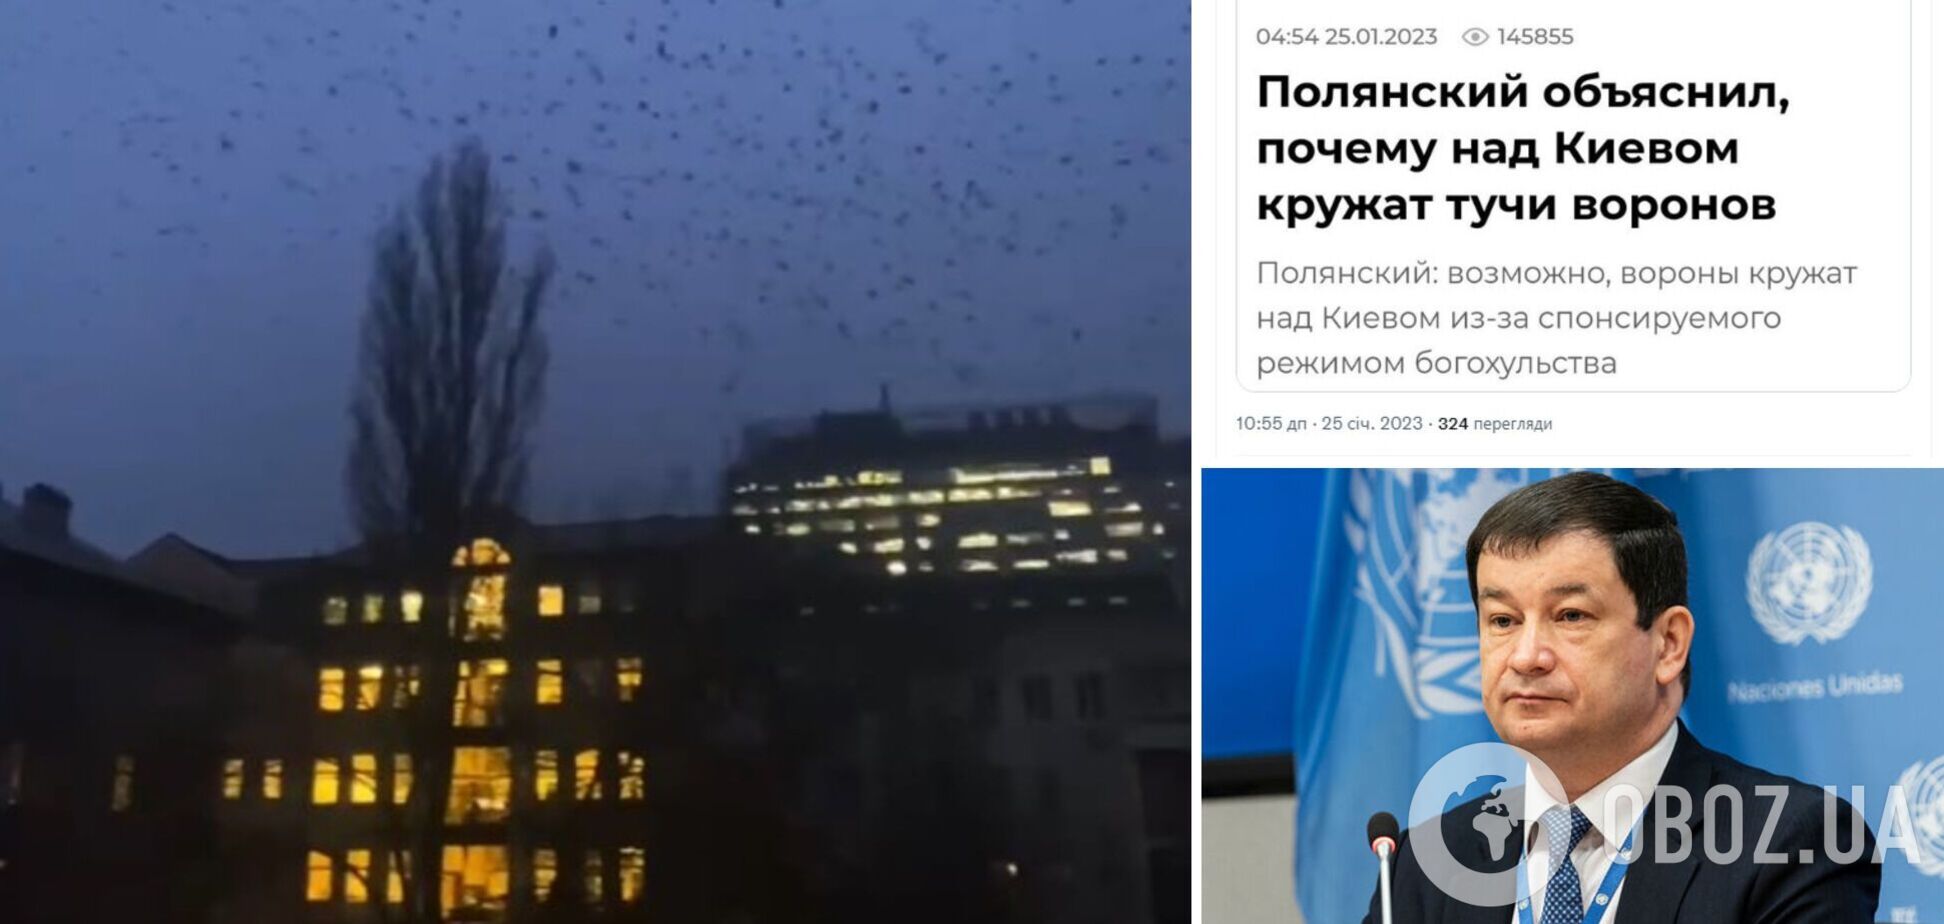 'Боевые комары отдыхают': в России выдали заявление об 'особых' воронах в небе над Киевом, в сети отреагировали